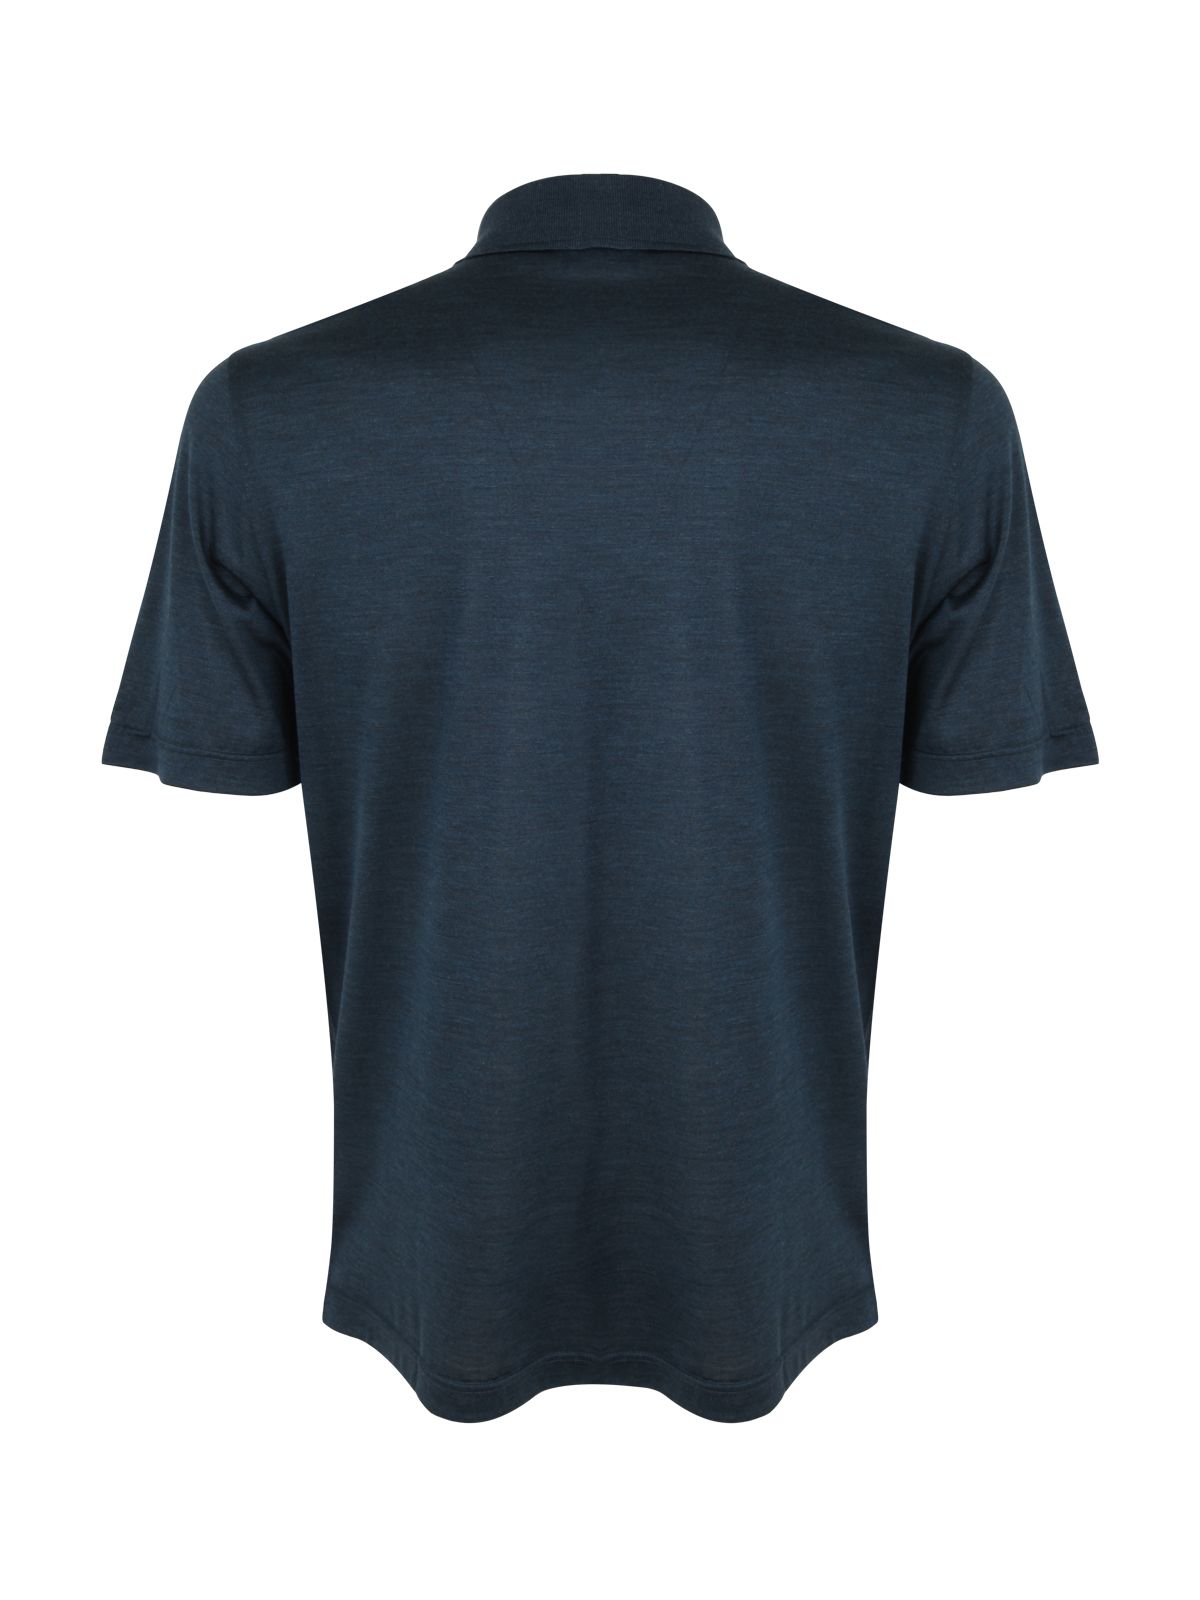 Shop Barba Napoli Silk Polo Shirt: Men